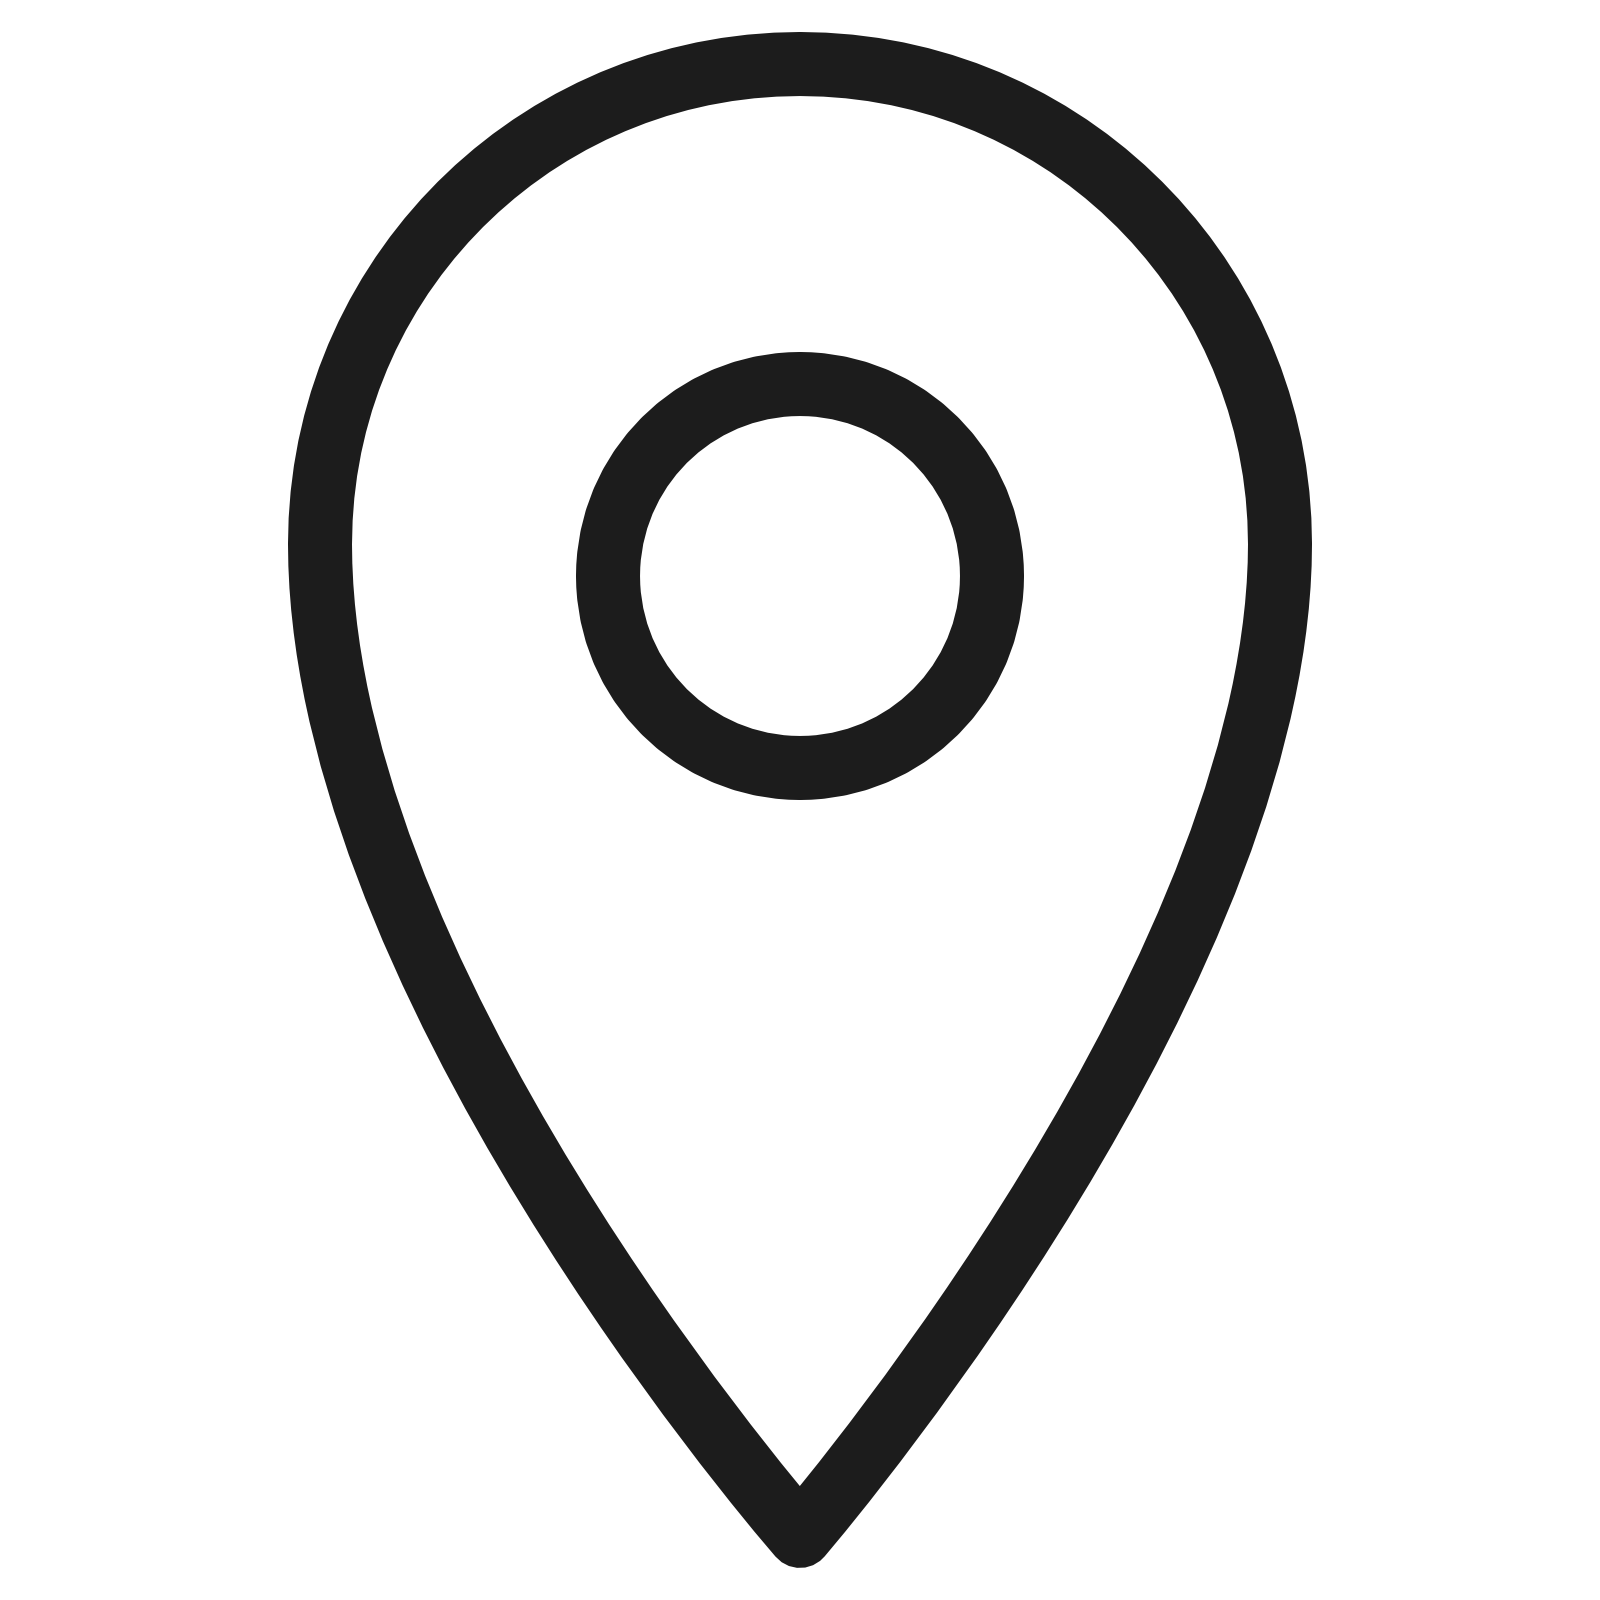 Местоположение неизвестно. Значок локации. Значок местоположения. Геолокация значок. Знак местоположения на карте без фона.